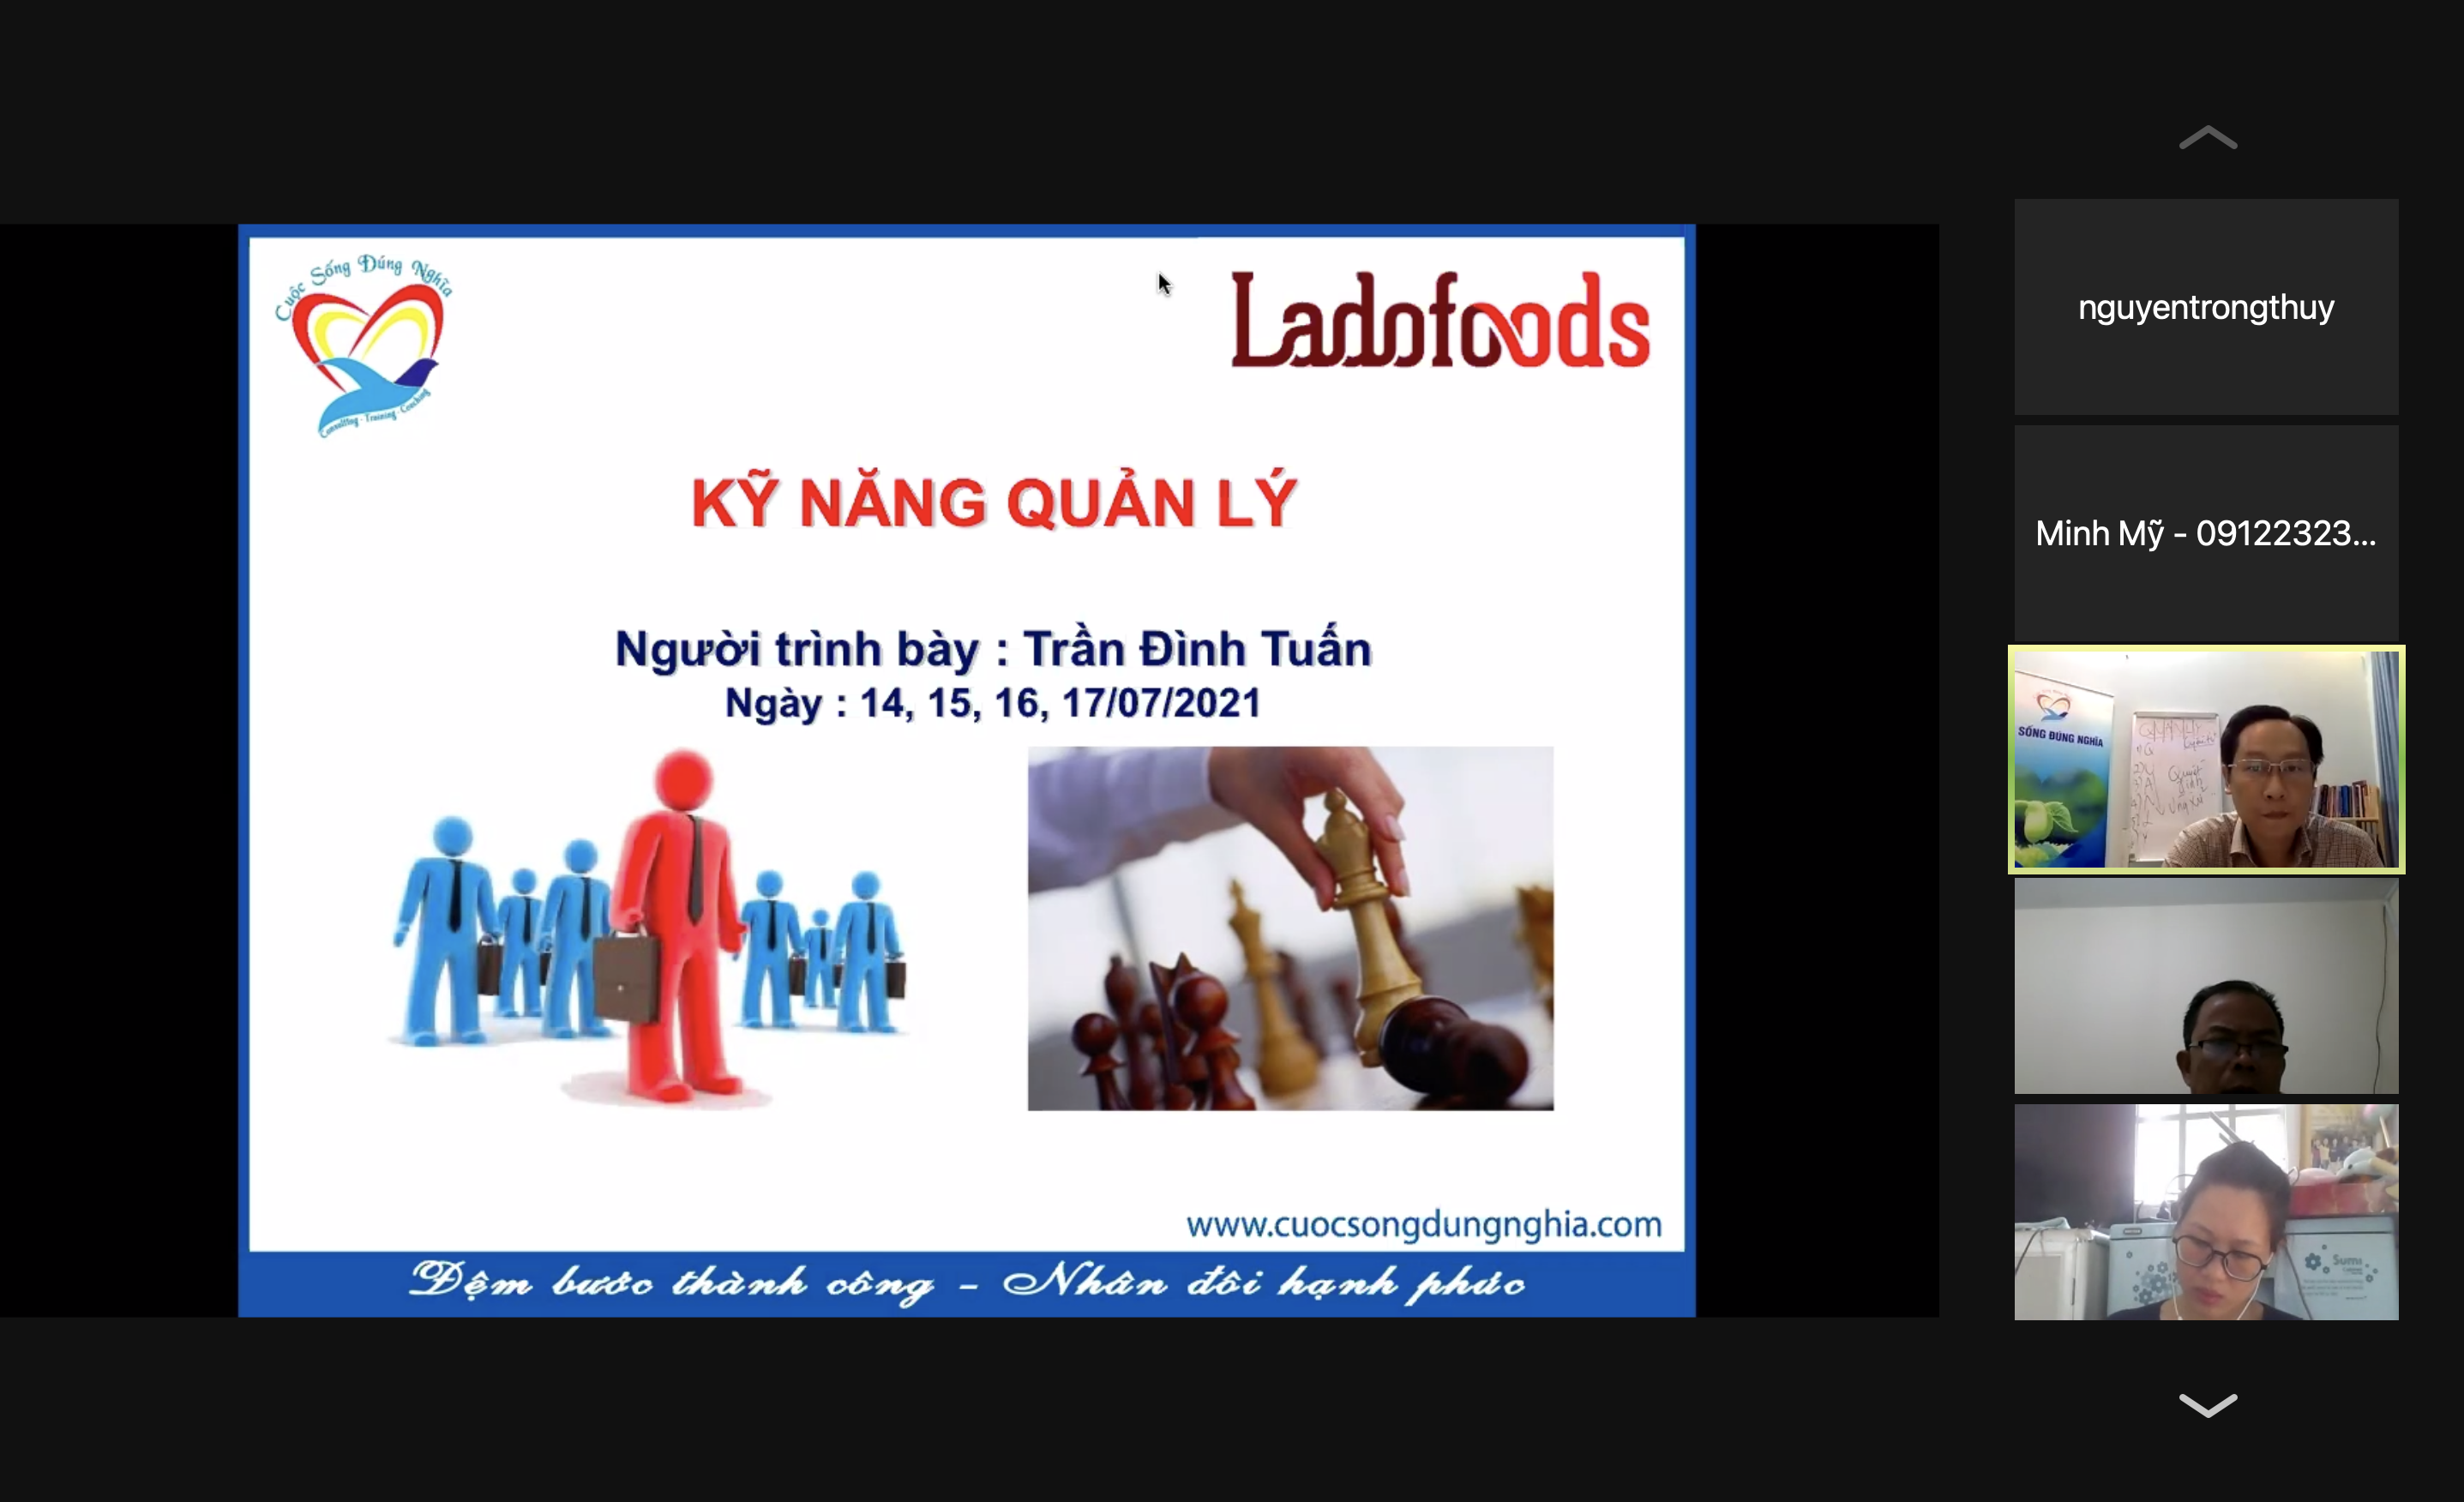 Đào tạo “Kỹ năng quản lý hiệu quả” cho Công Ty Ladofoods